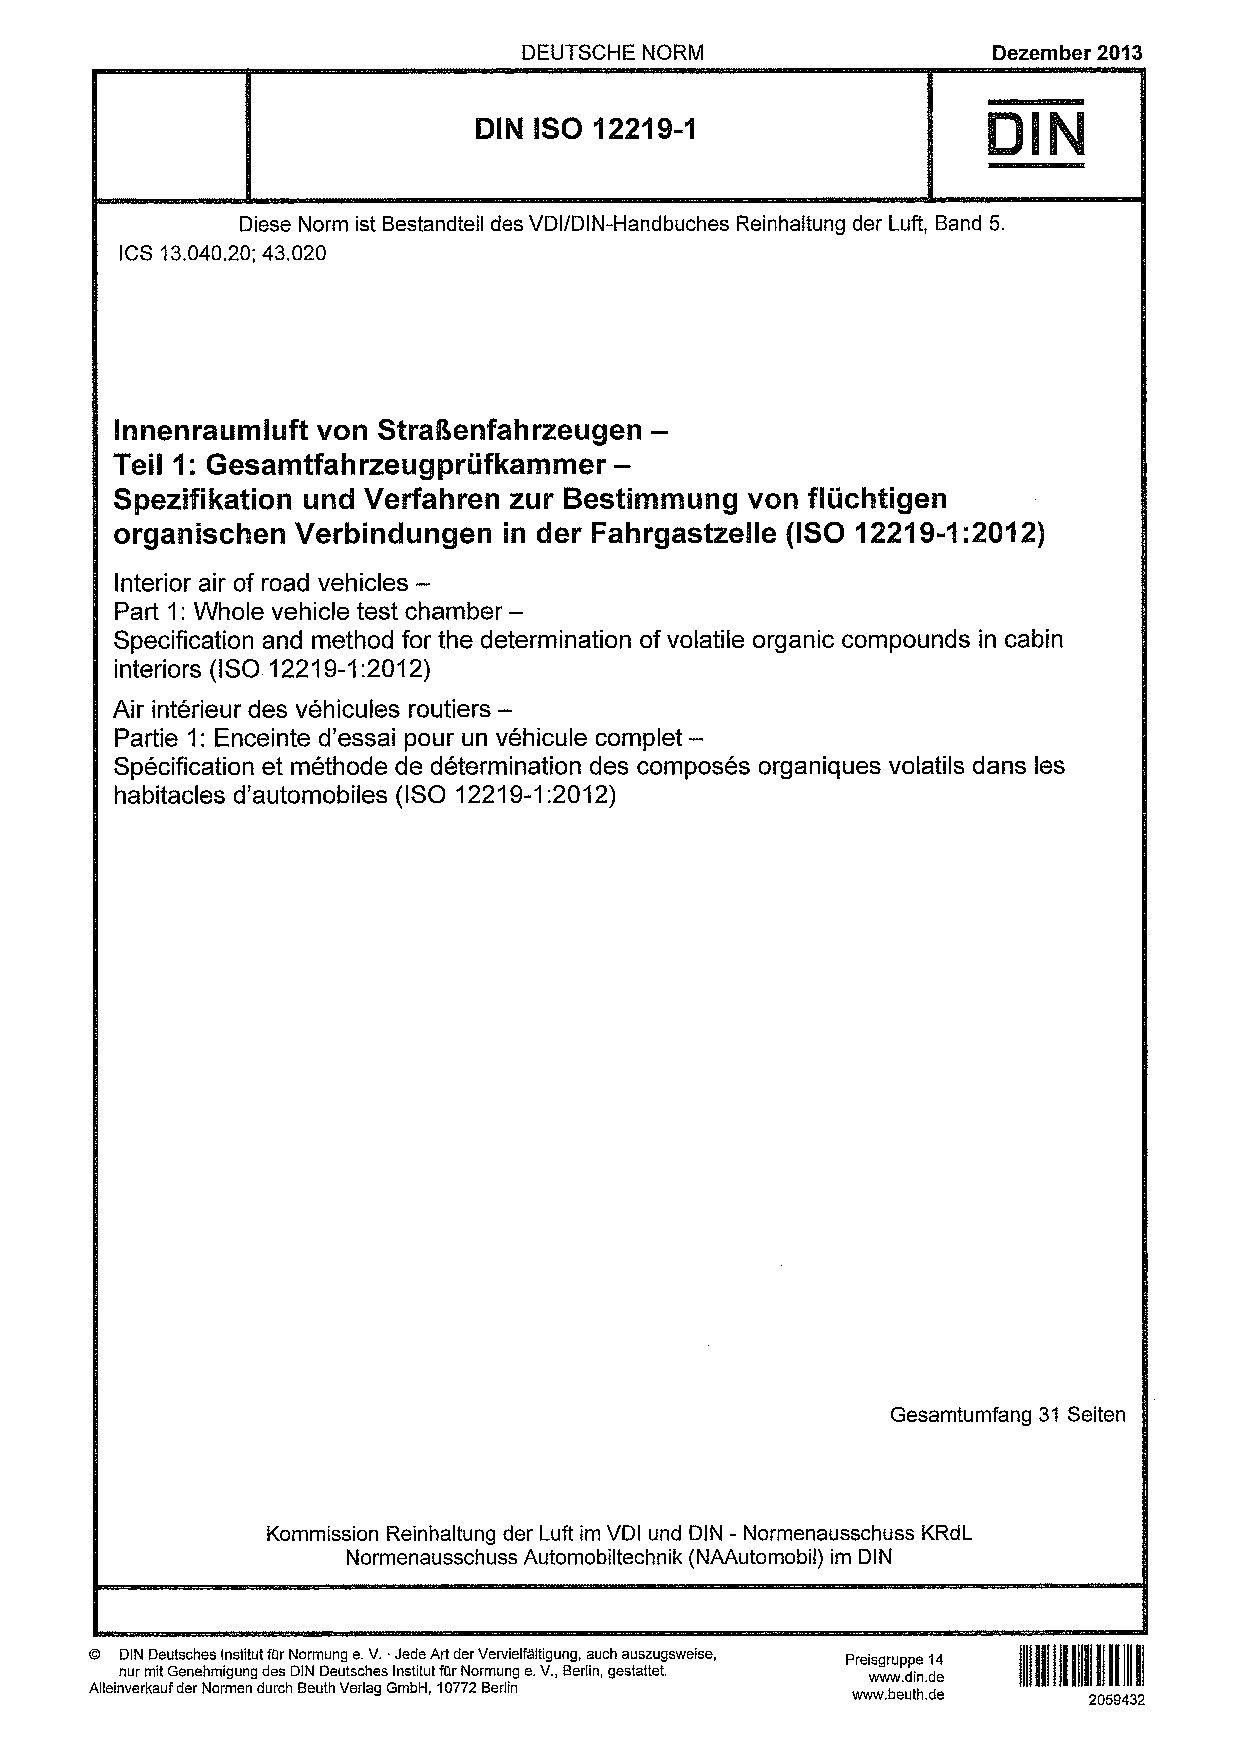 DIN ISO 12219-1:2013封面图